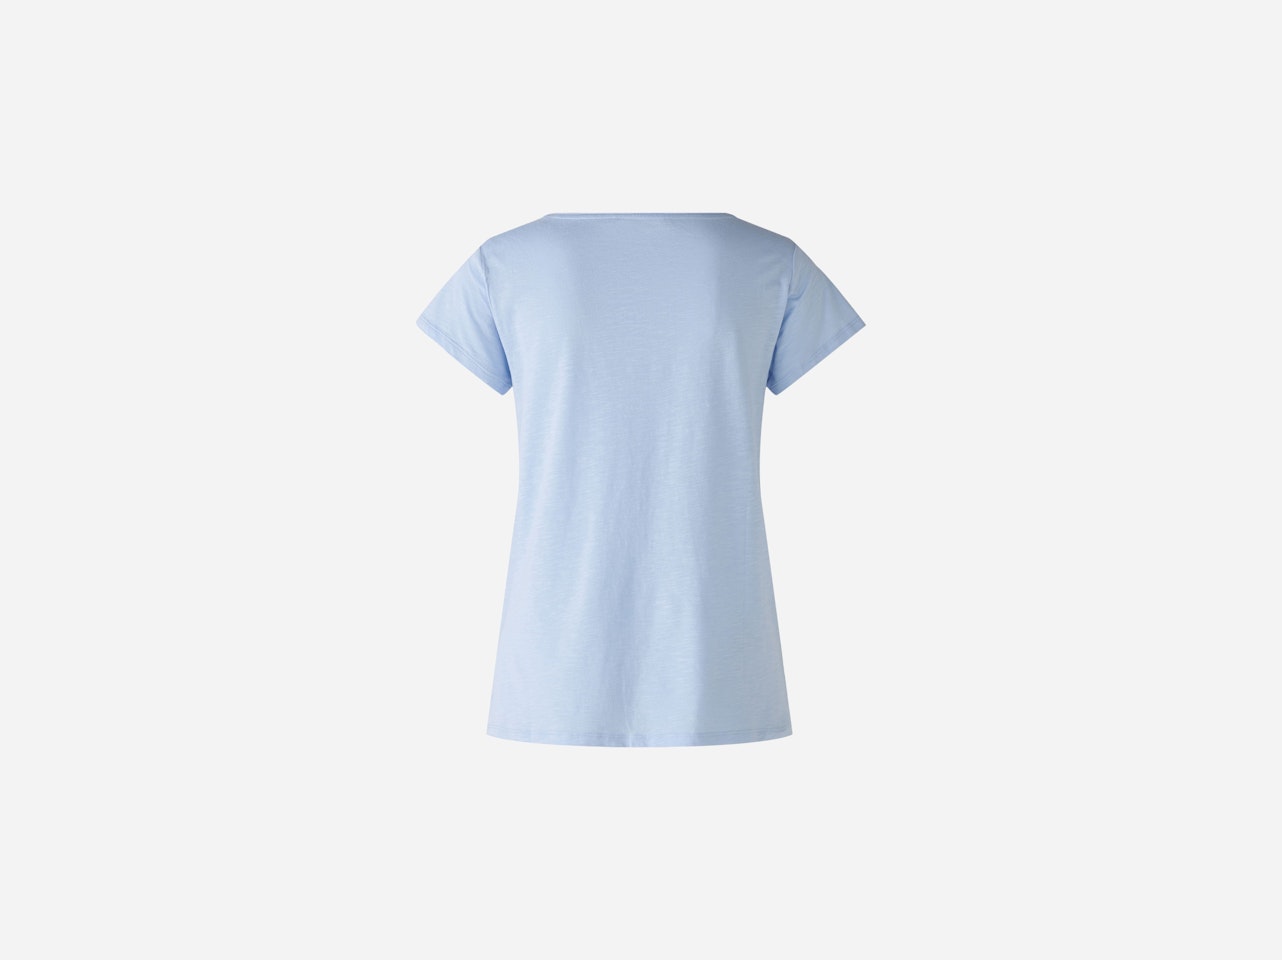 Bild 7 von T-shirt cotton viscose blend in light blue | Oui